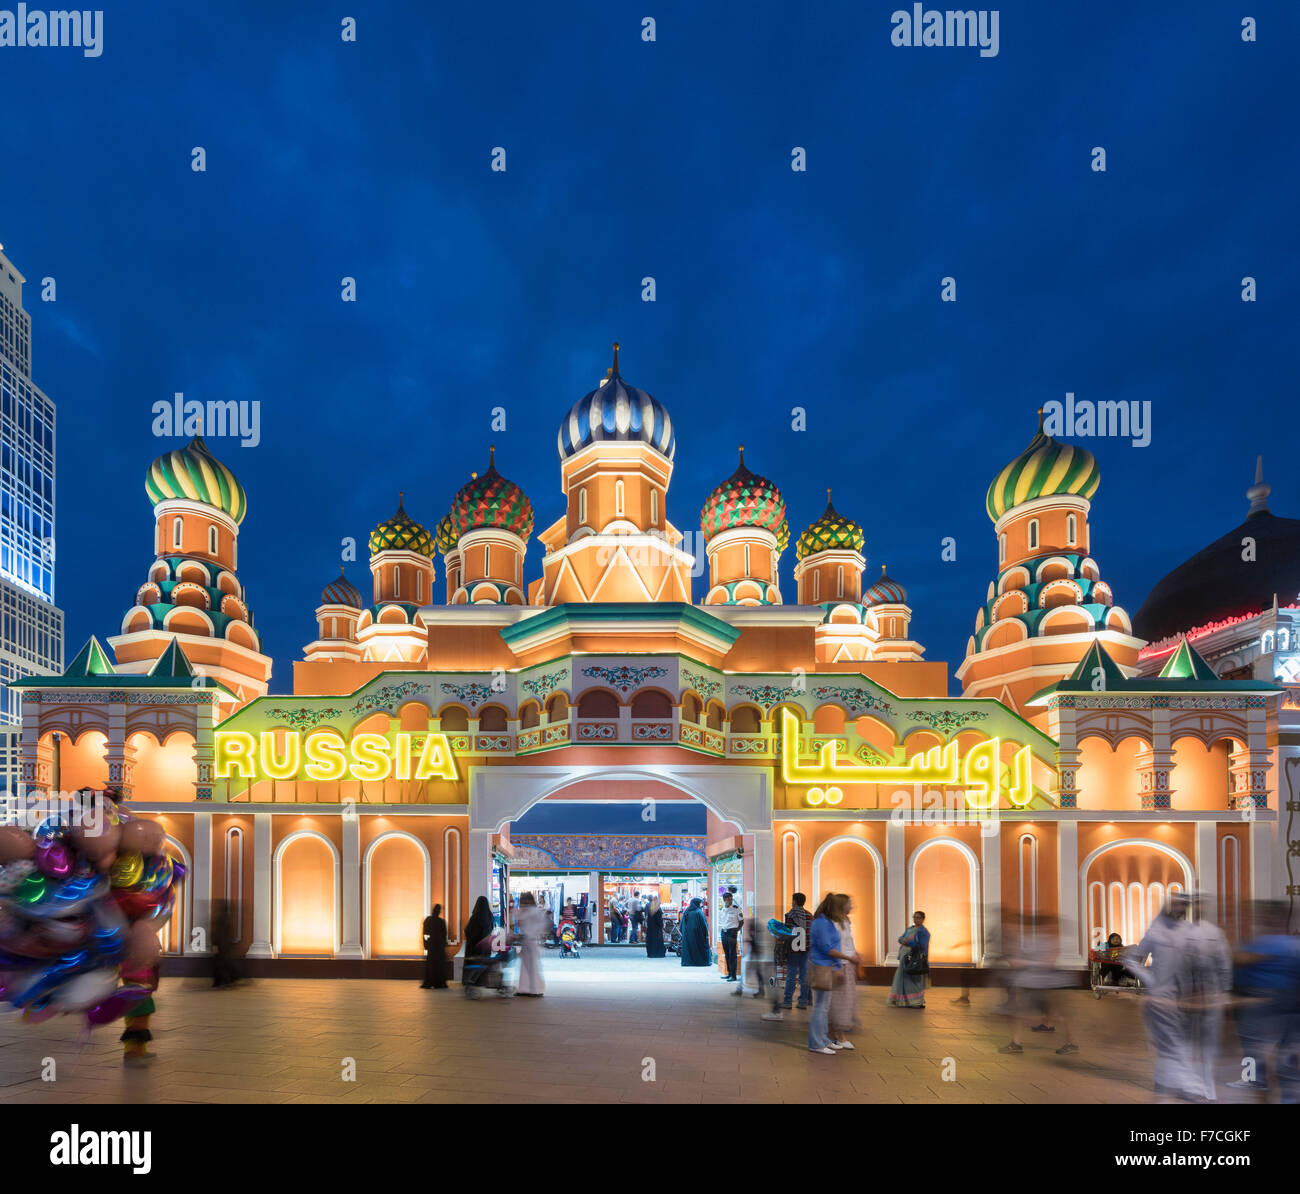 Pavillon russe Éclairé de nuit en Village Mondial 2015 à Dubaï Émirats Arabes Unis Banque D'Images